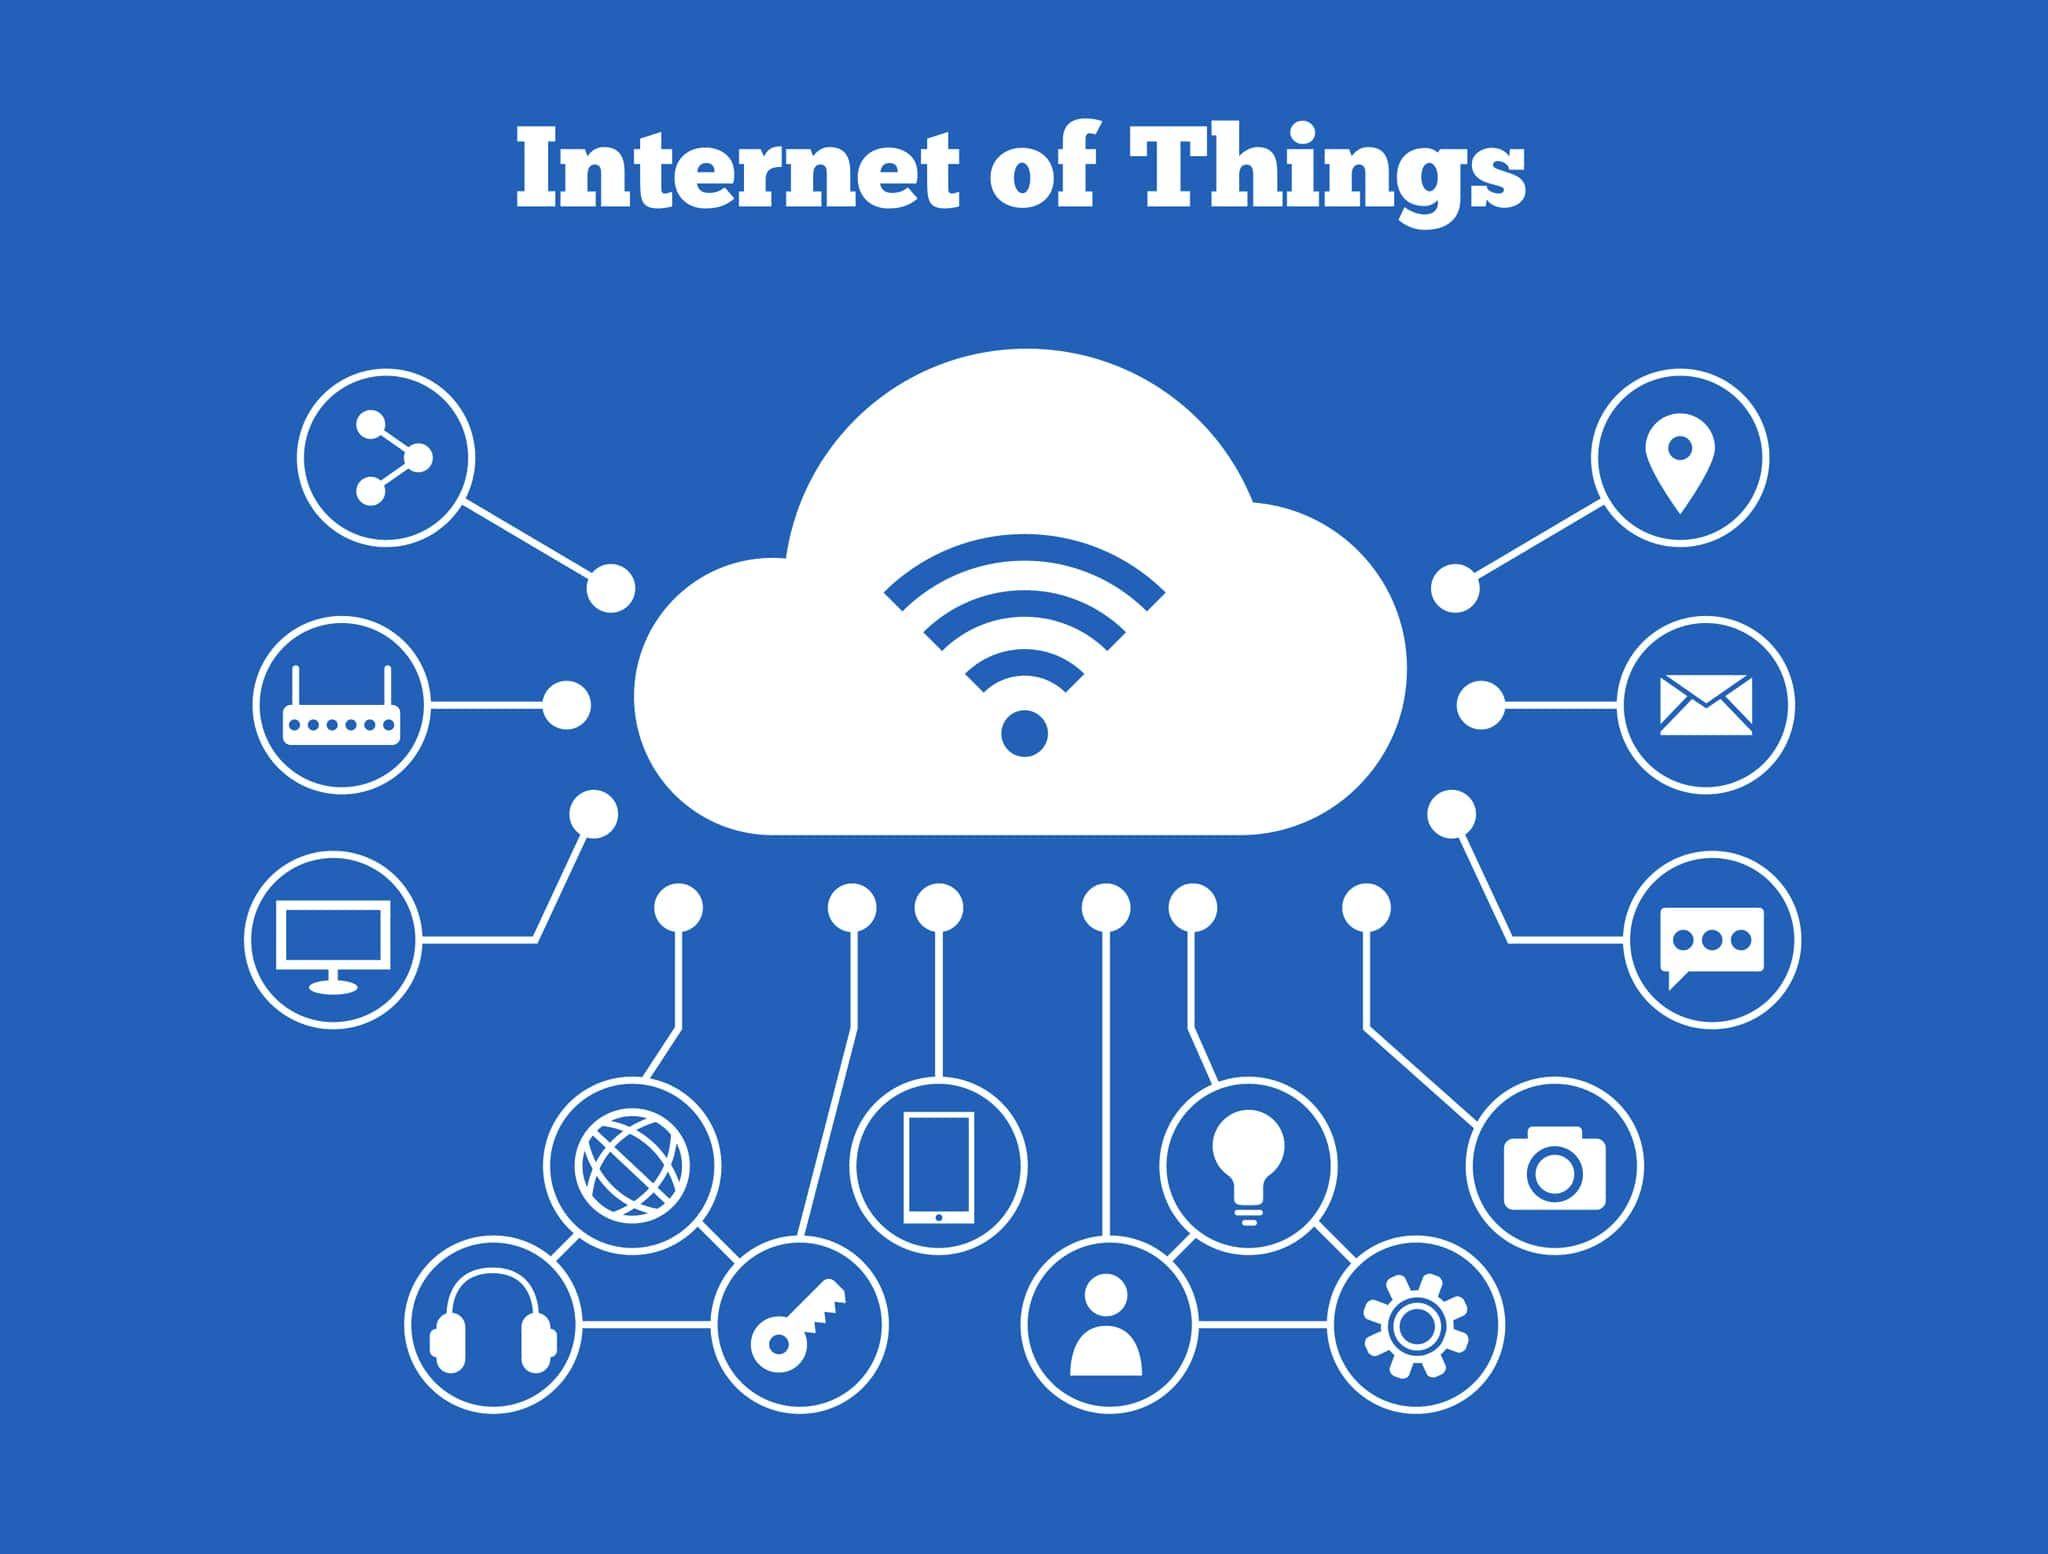 Apa itu Internet of Things (IoT) dan Cara Kerjanya? | Popmama.com Community